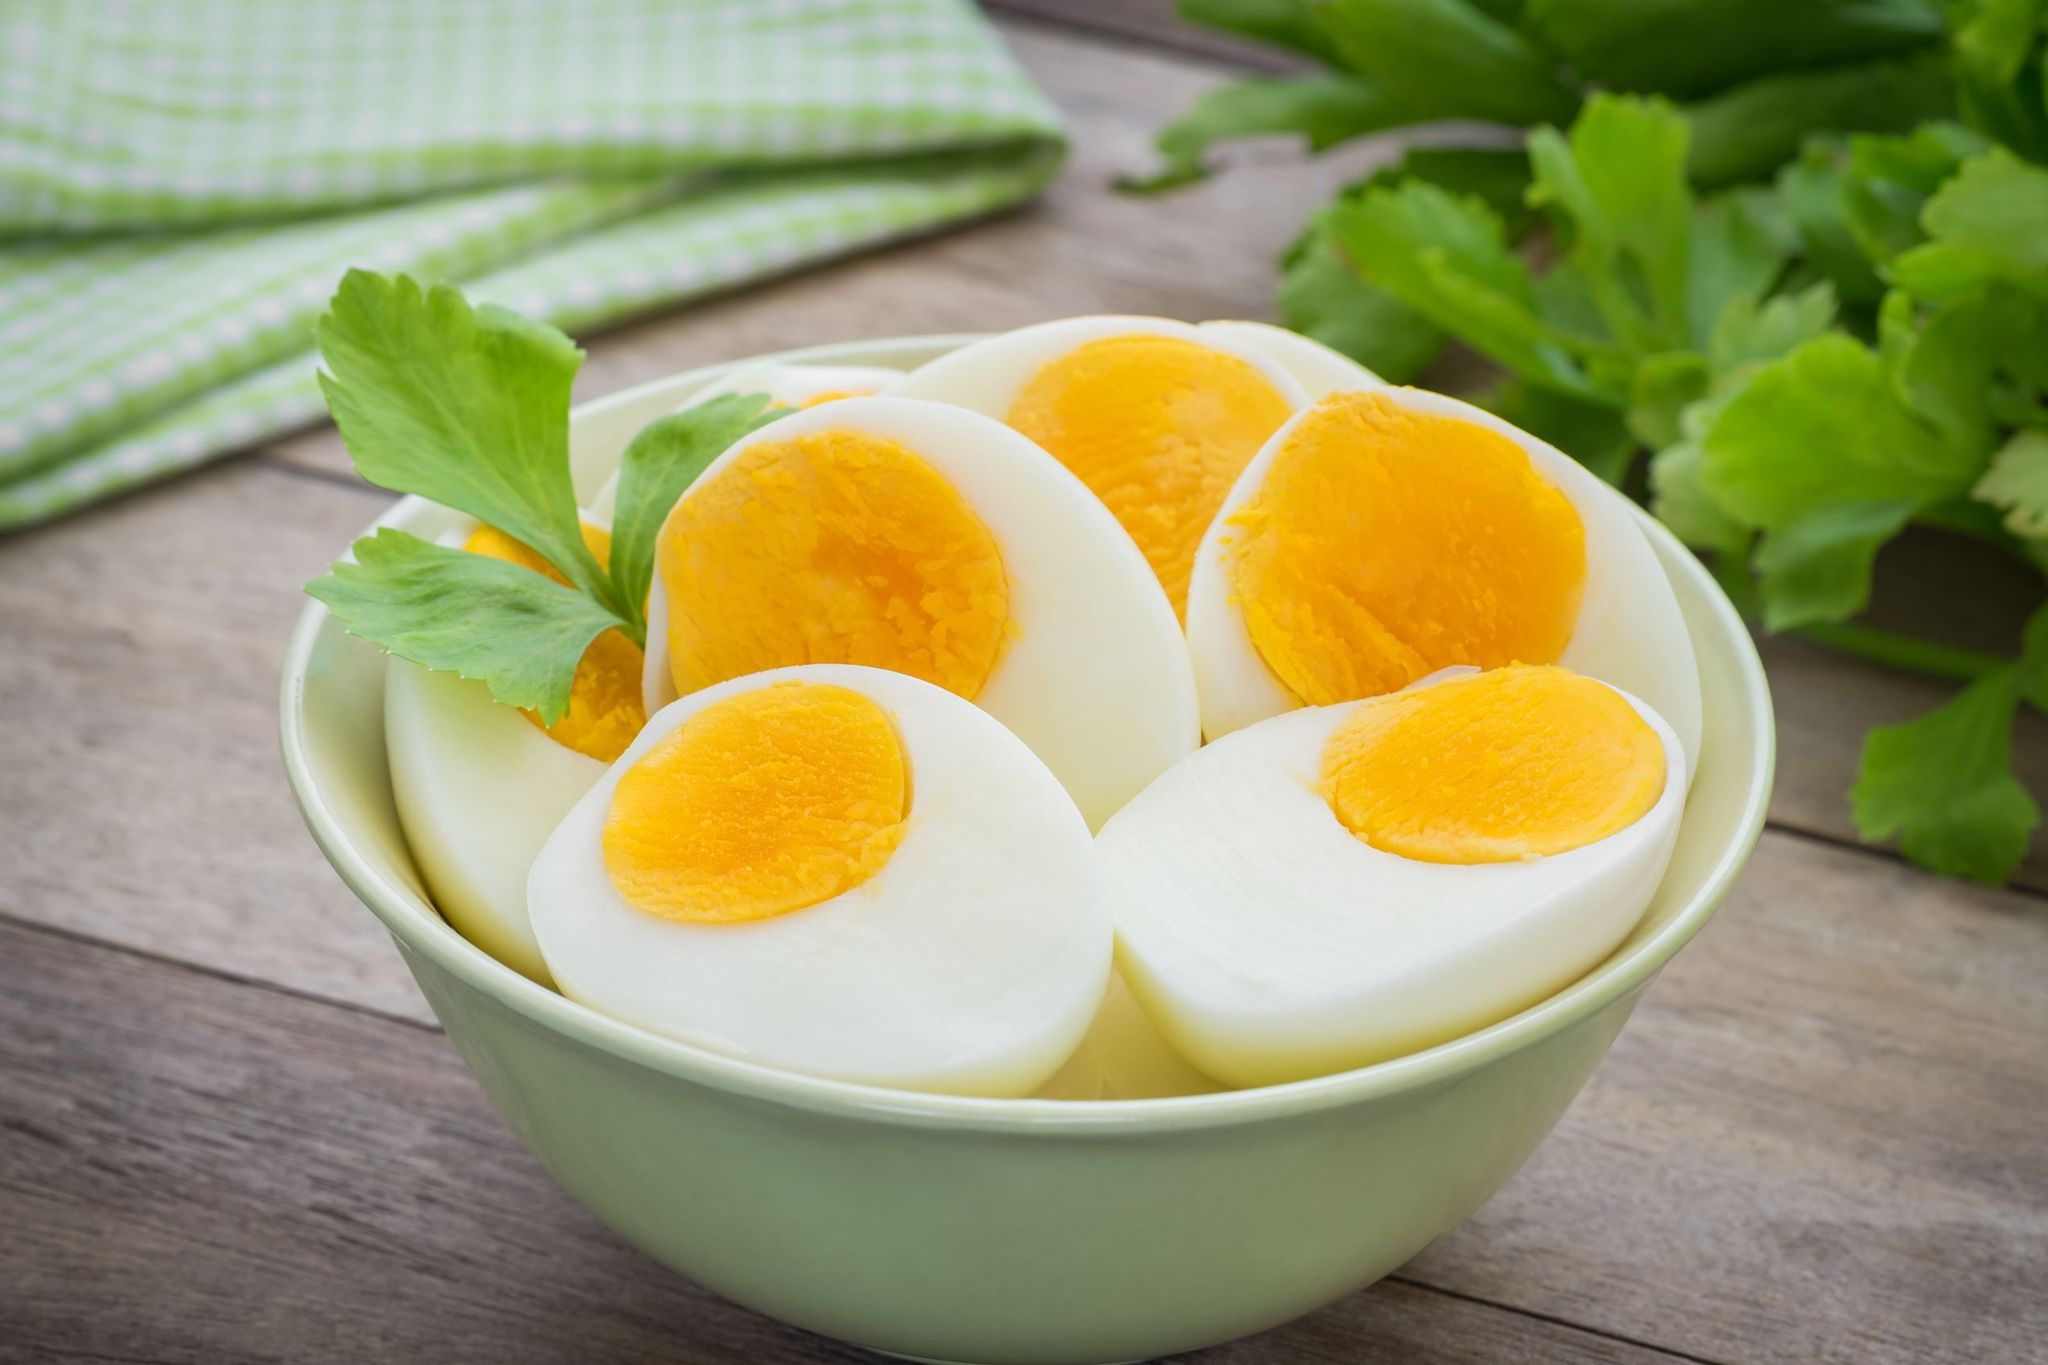 Her gün yumurta yemek bazı hastalıkları tetikliyor